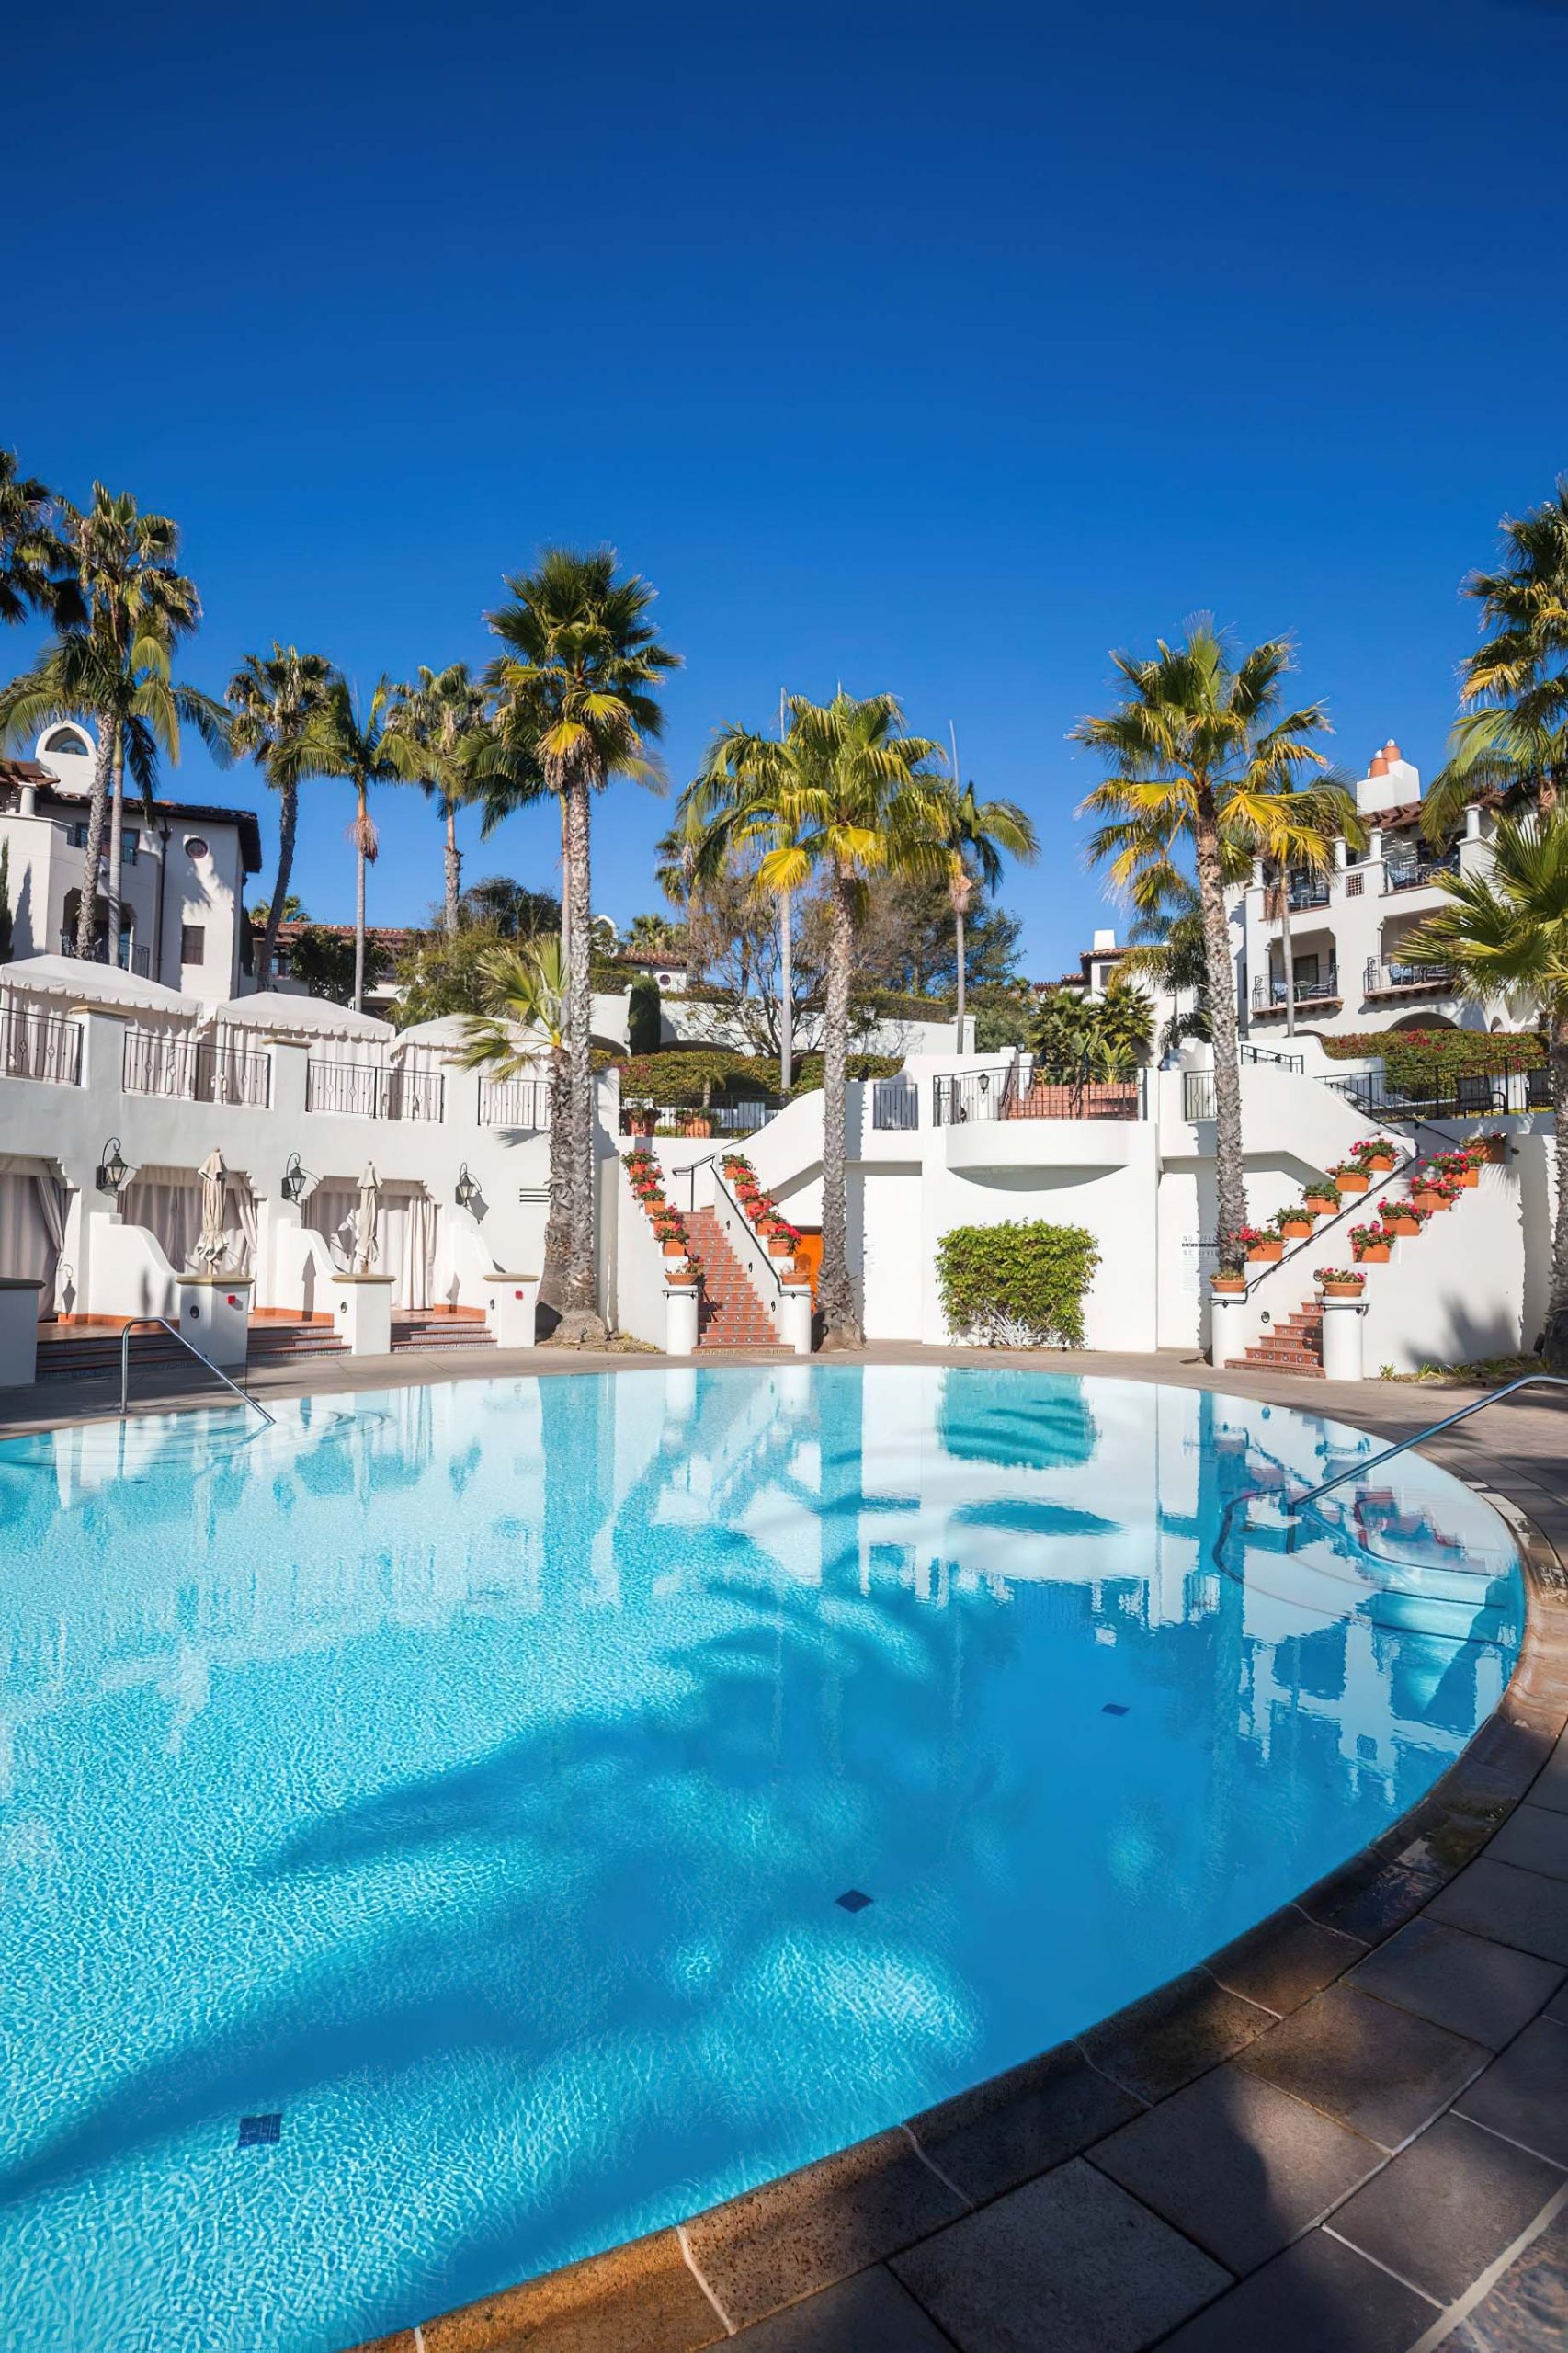 The Ritz-Carlton Bacara, Santa Barbara Resort – Santa Barbara, CA, USA – Resort Pool Deck